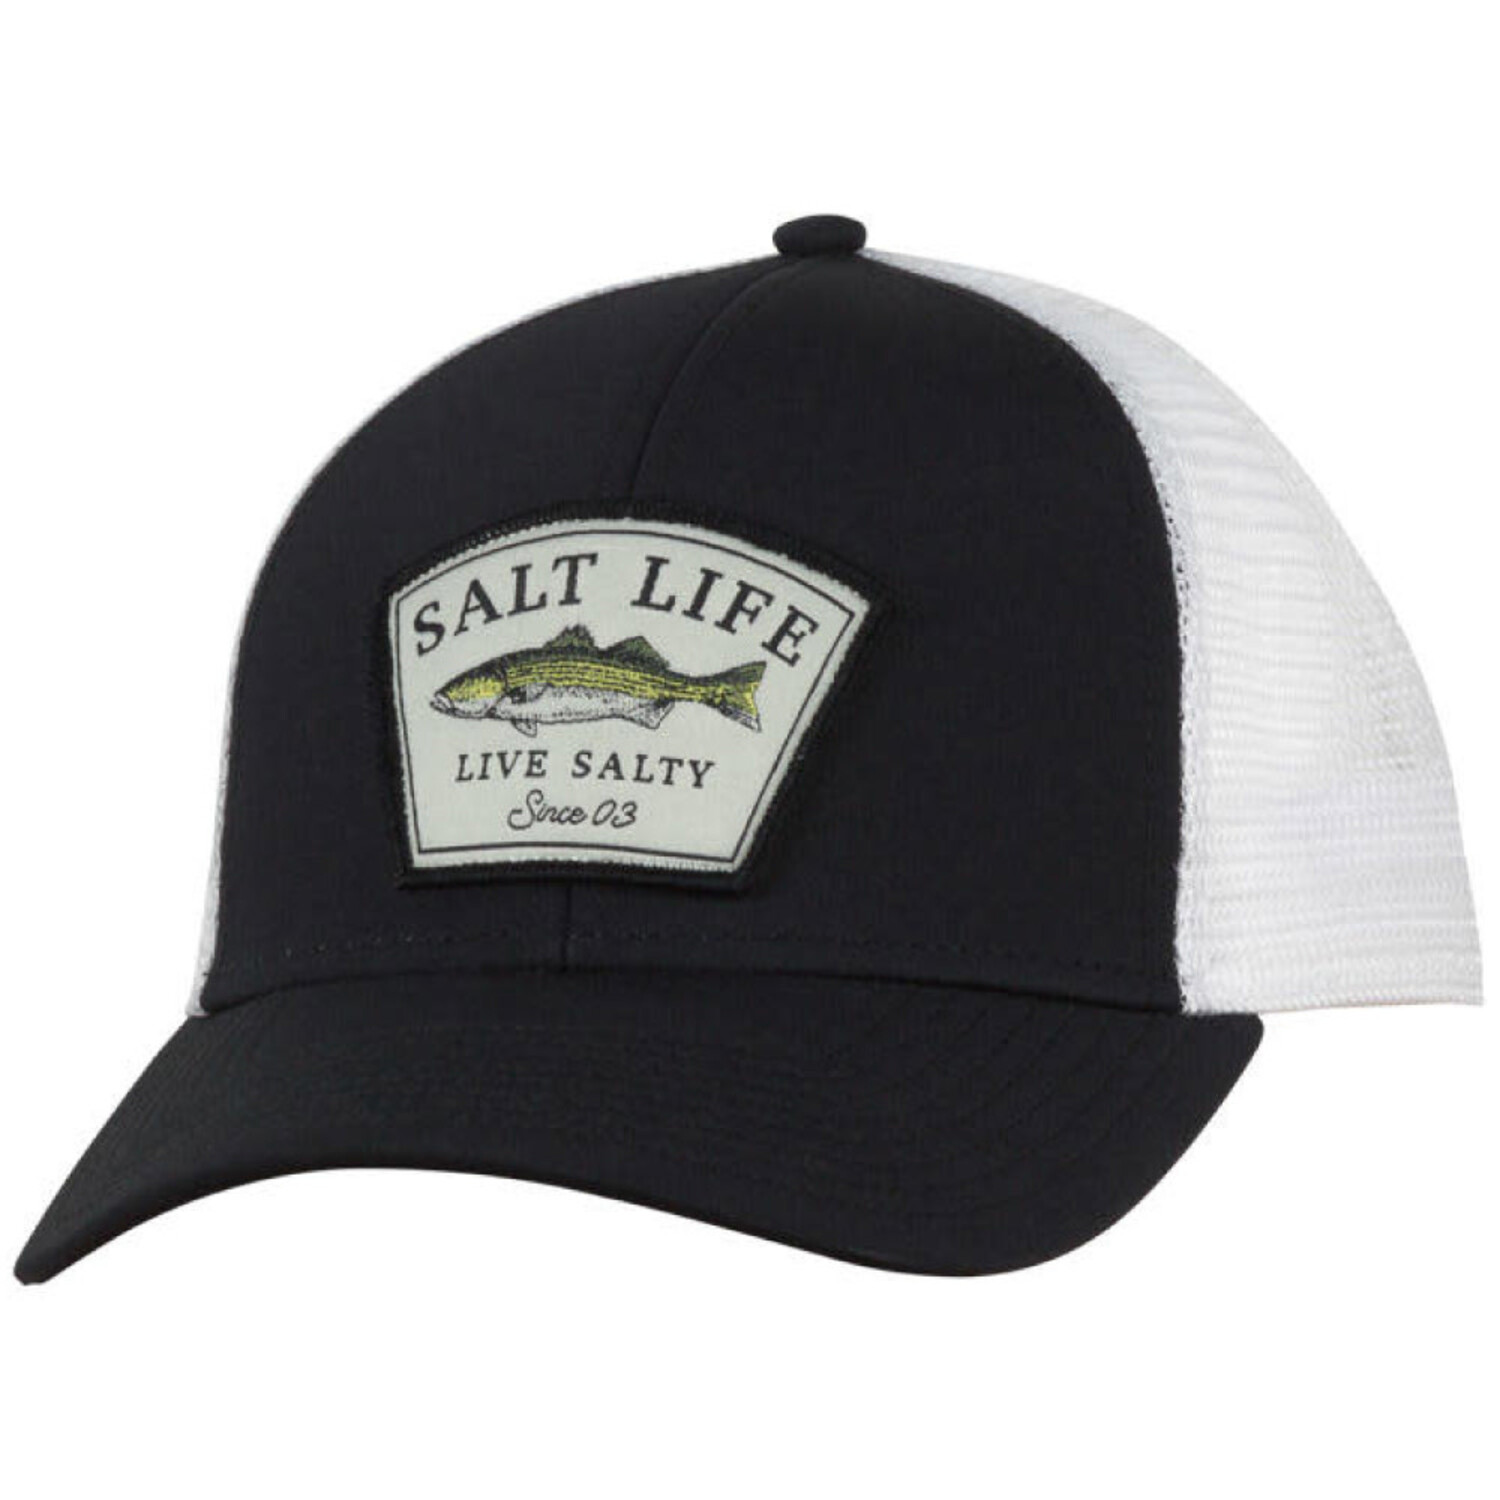 Salt Life Fish Series Mens Hat - Fin-atics Marine Supply Ltd. Inc.